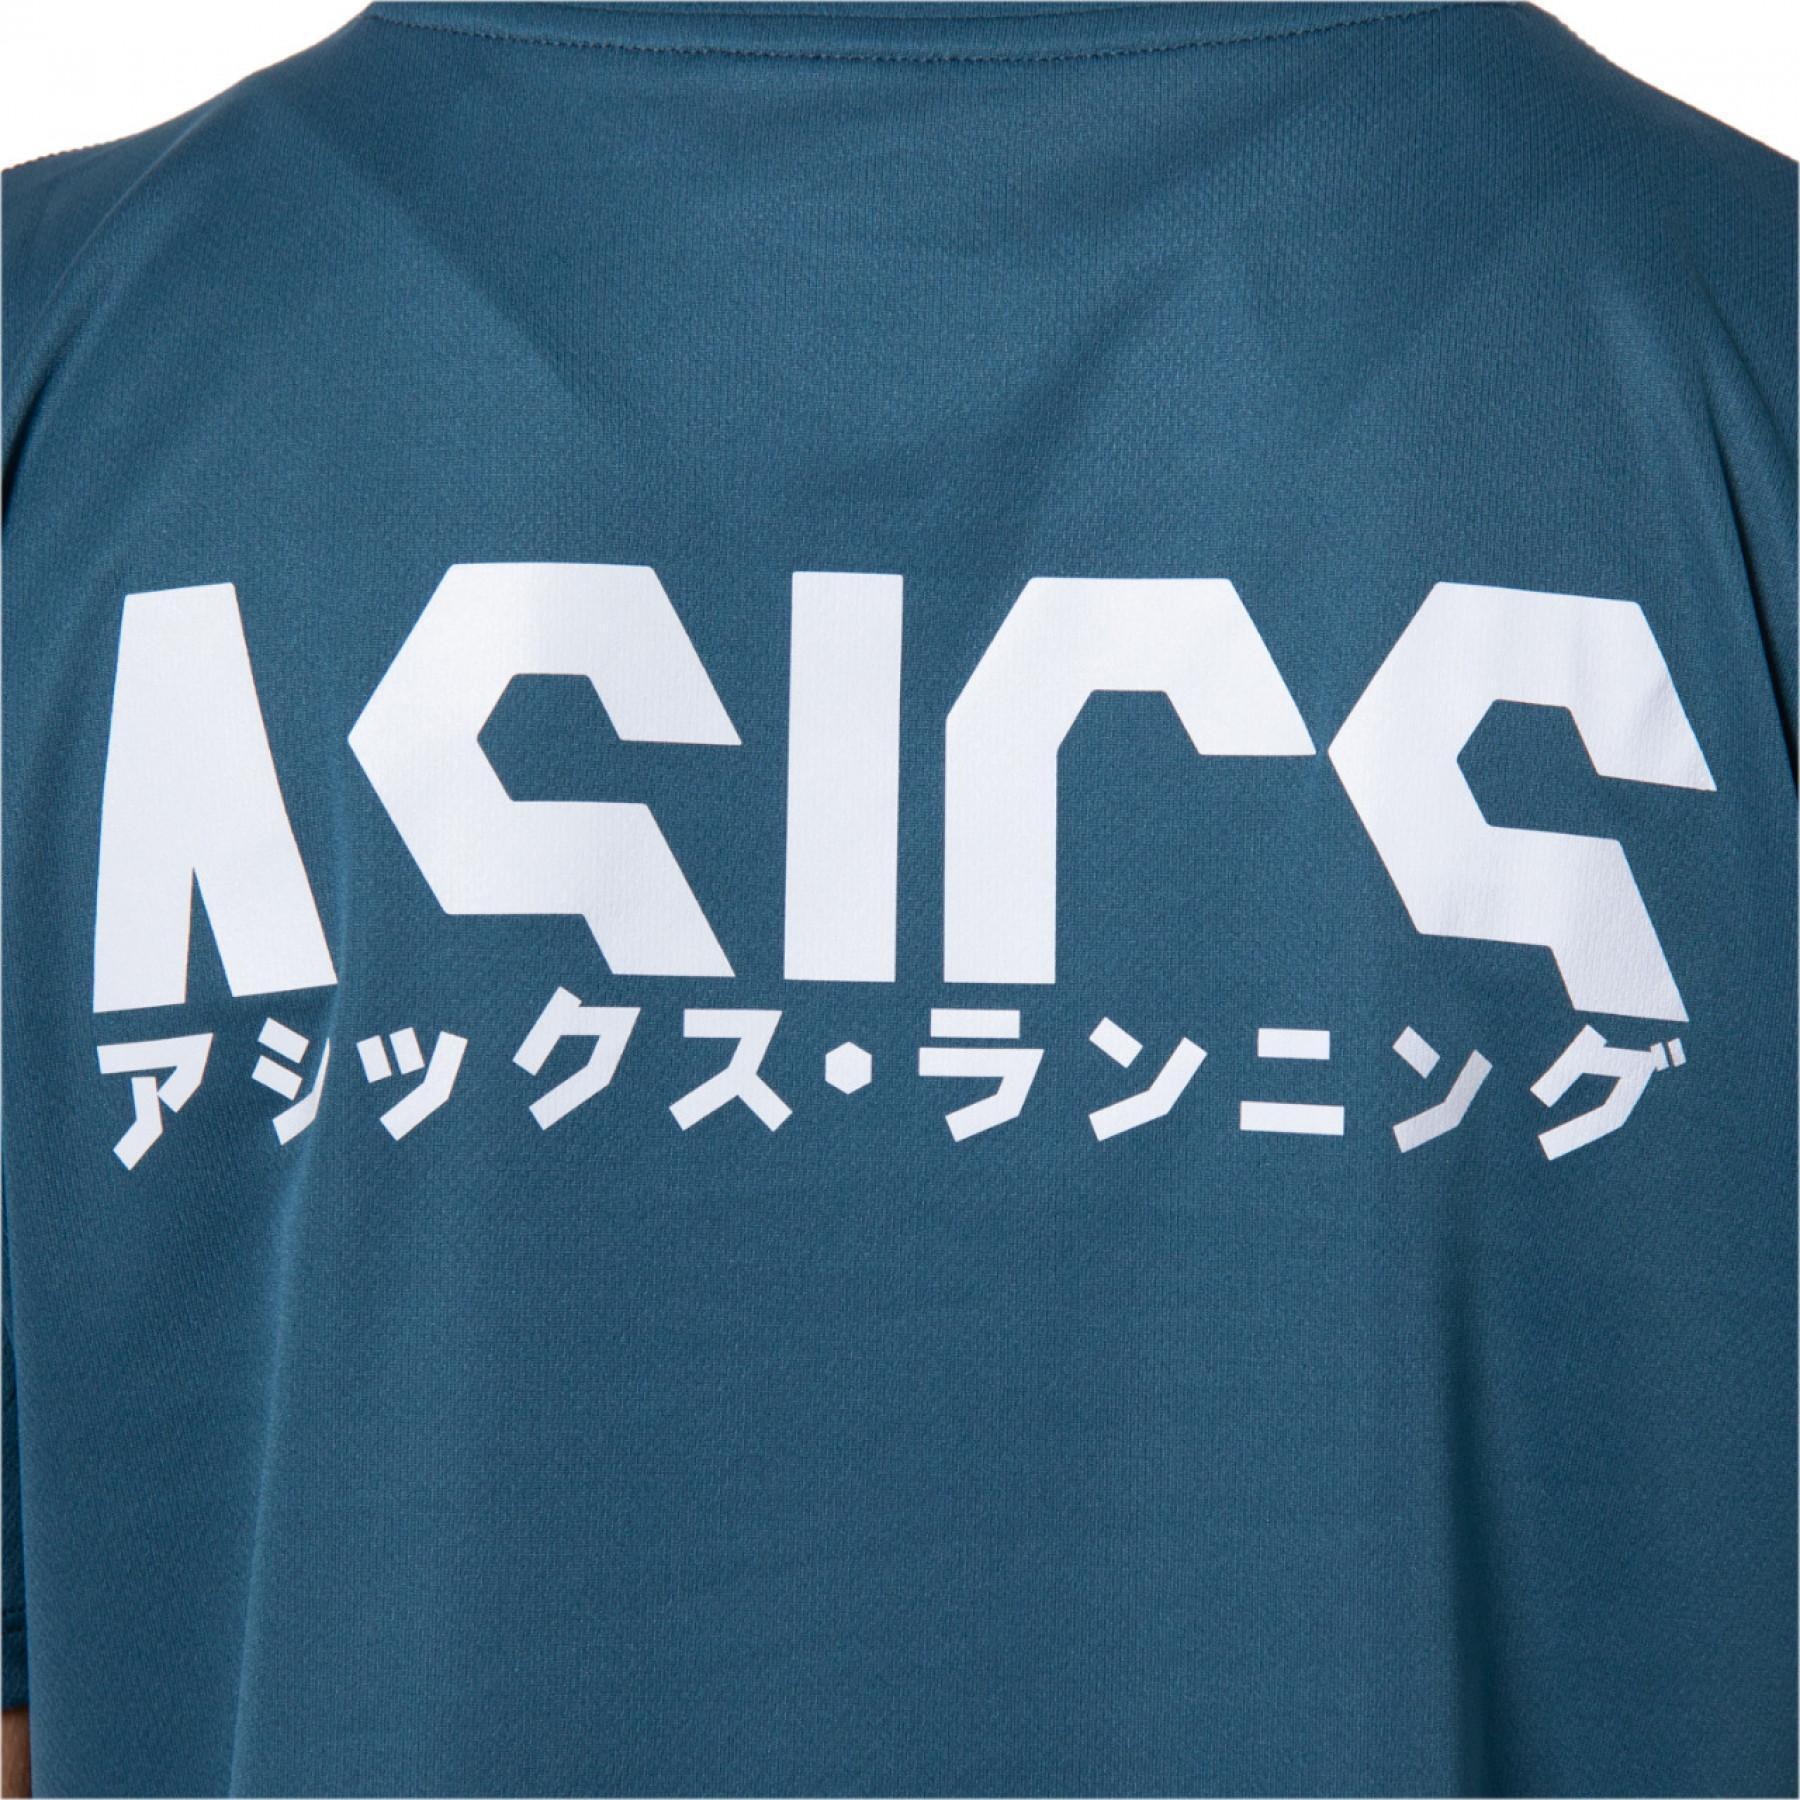 Koszulka damska Asics Katakana